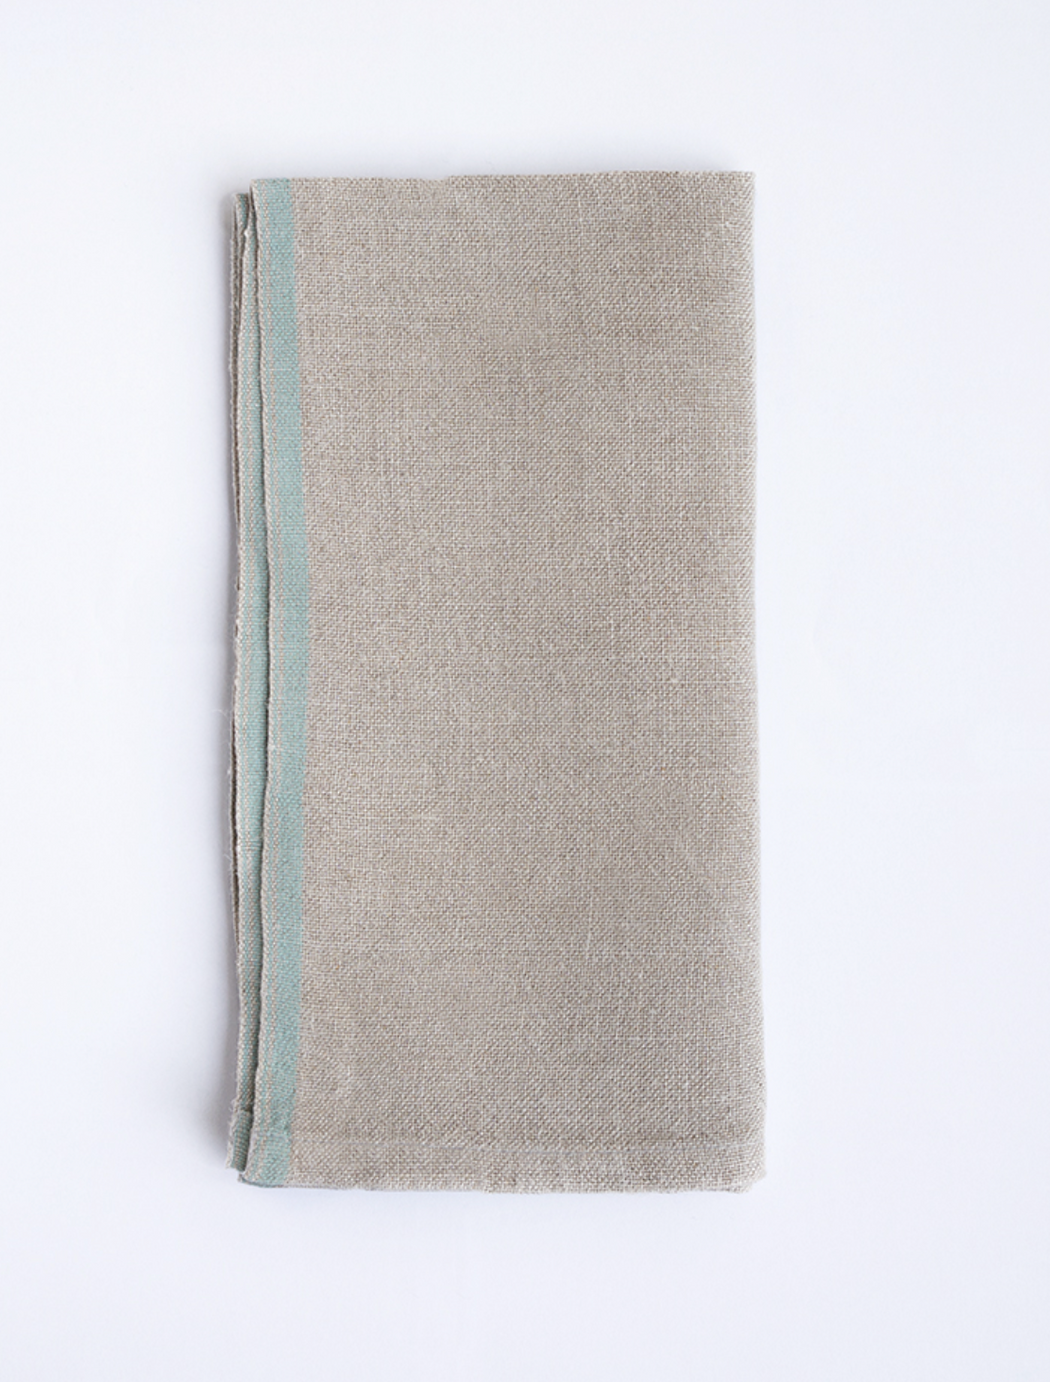 Mungo :: Colored Edge Linen Napkin